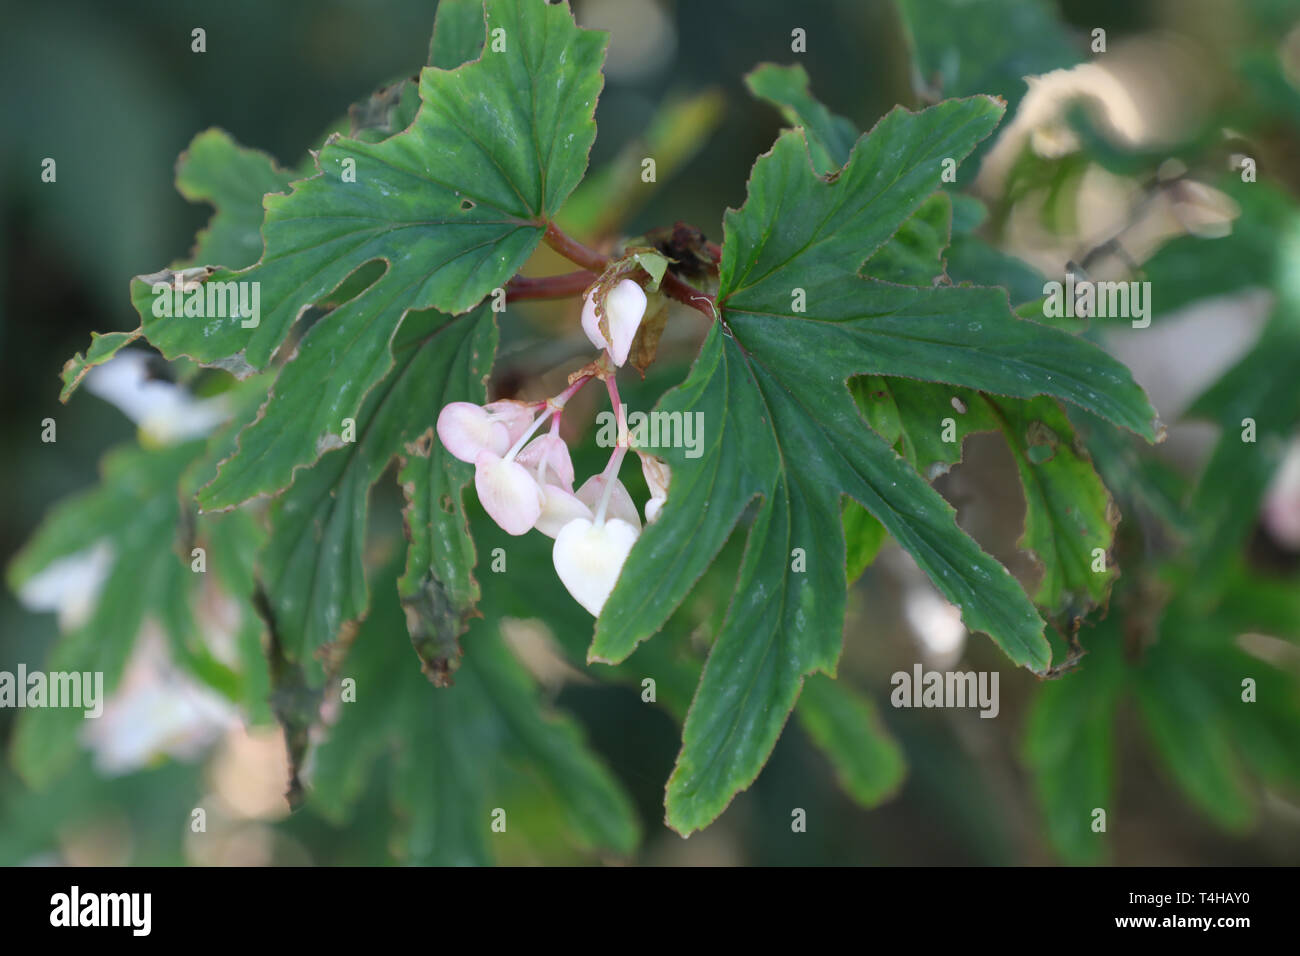 Begonia aconitifolia, family Begoniaceae, Brazil in the Royal Botanic Garden, Sydney. Stock Photo